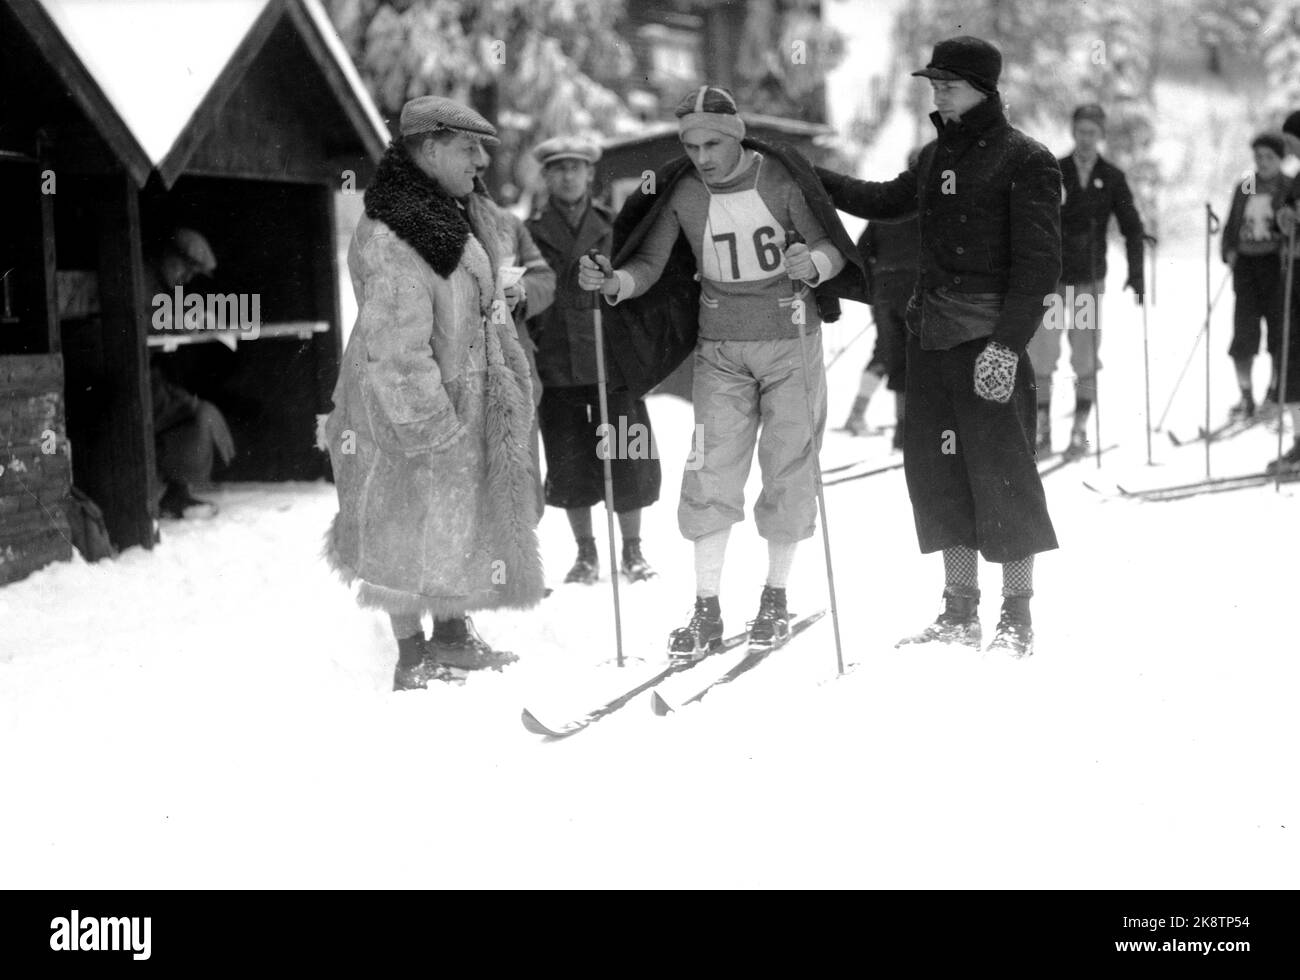 Oslo Febbraio 1933 la gara continentale: Arne Rustadstuen era al numero 2. A 30 km. Qui al via. Arne Rustadstuen (Norwegian, 14/12 1905 – 25/4 1978) è stato un . Ha preso l'oro a 17 km durante la Coppa del mondo di Oslo nel 1930, e t bronzo in combinato durante la Coppa del mondo di Oberhof 1931. Durante le Olimpiadi del 1932 prese il bronzo a cinque miglia. Rustadstuen ha partecipato anche alle Olimpiadi del 1936 a Garmisch-Partenkirchen. Nel 1935 riceve la medaglia Holmenkoll. Foto; NTB / NTB Foto Stock